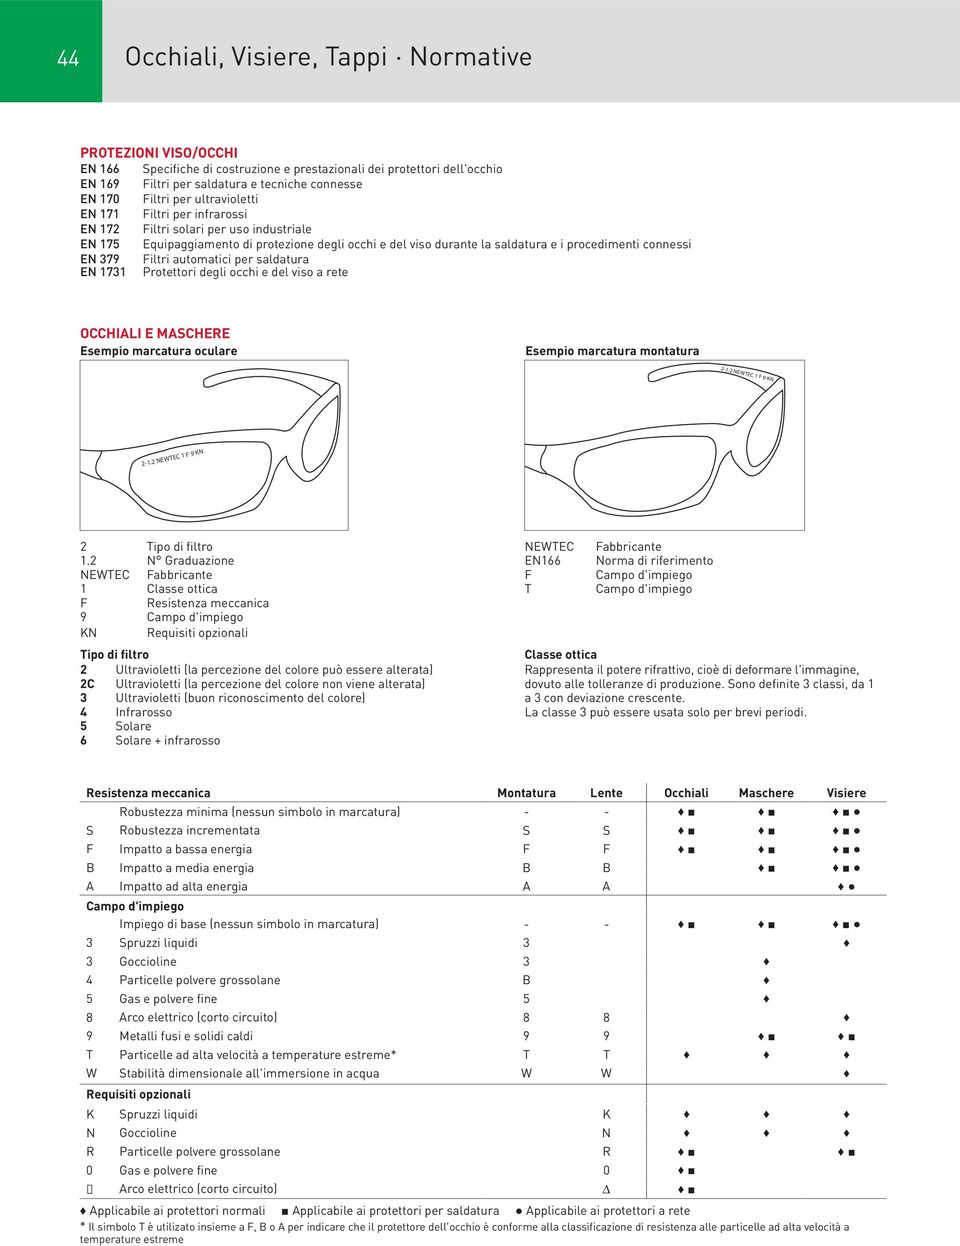 procedimenti connessi EN 379 Filtri automatici per saldatura EN 1731 Protettori degli occhi e del viso a rete OCCHIALI E MASCHERE Esempio marcatura oculare Esempio marcatura montatura 2-1.